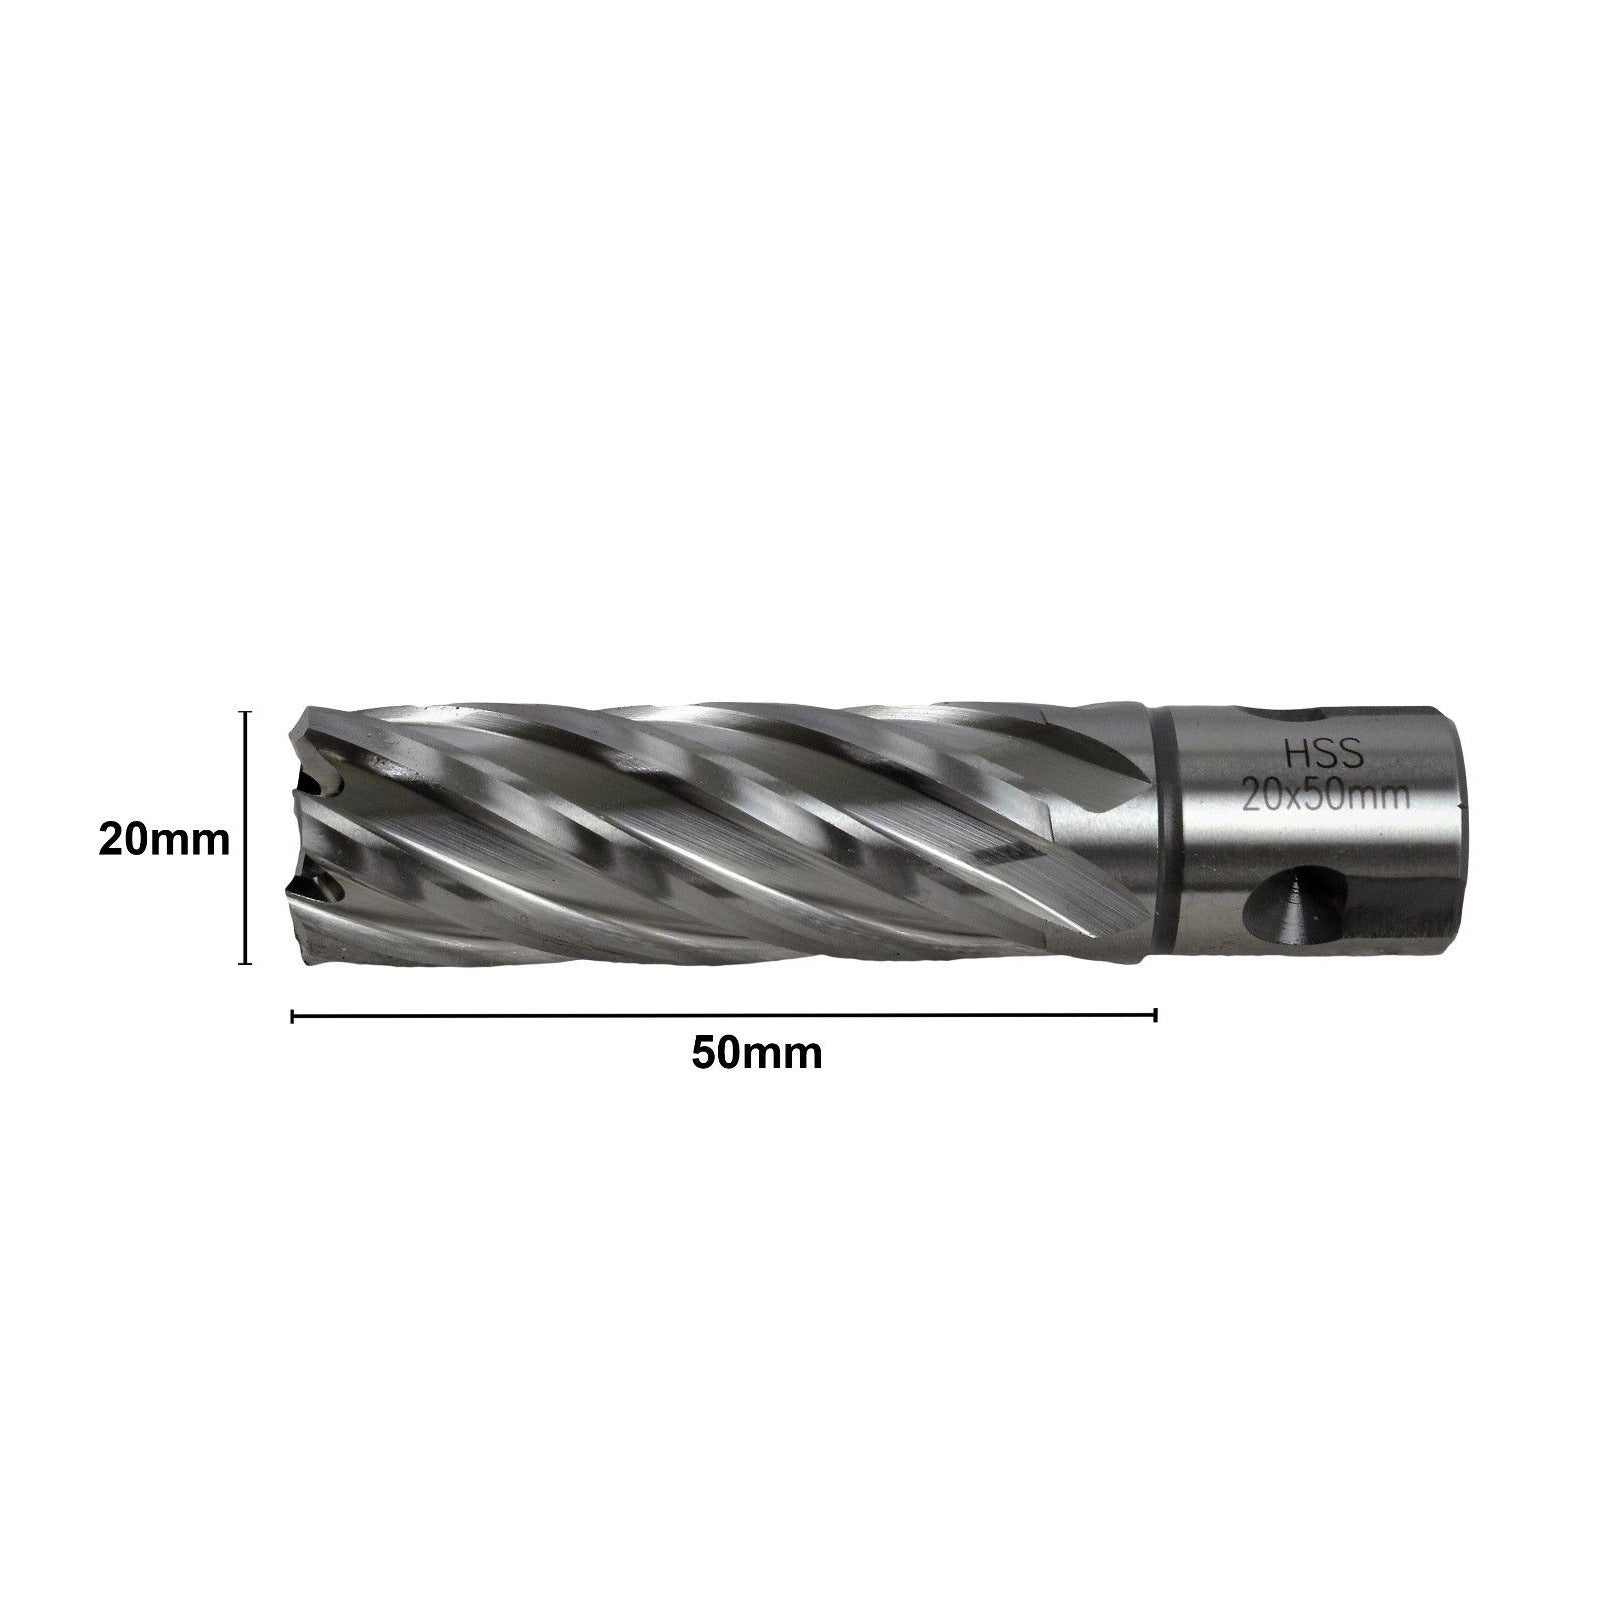 20x50mm HSS Annular Broach Cutter ; Magnetic Drill ; Rotabroach ; Universal Shank